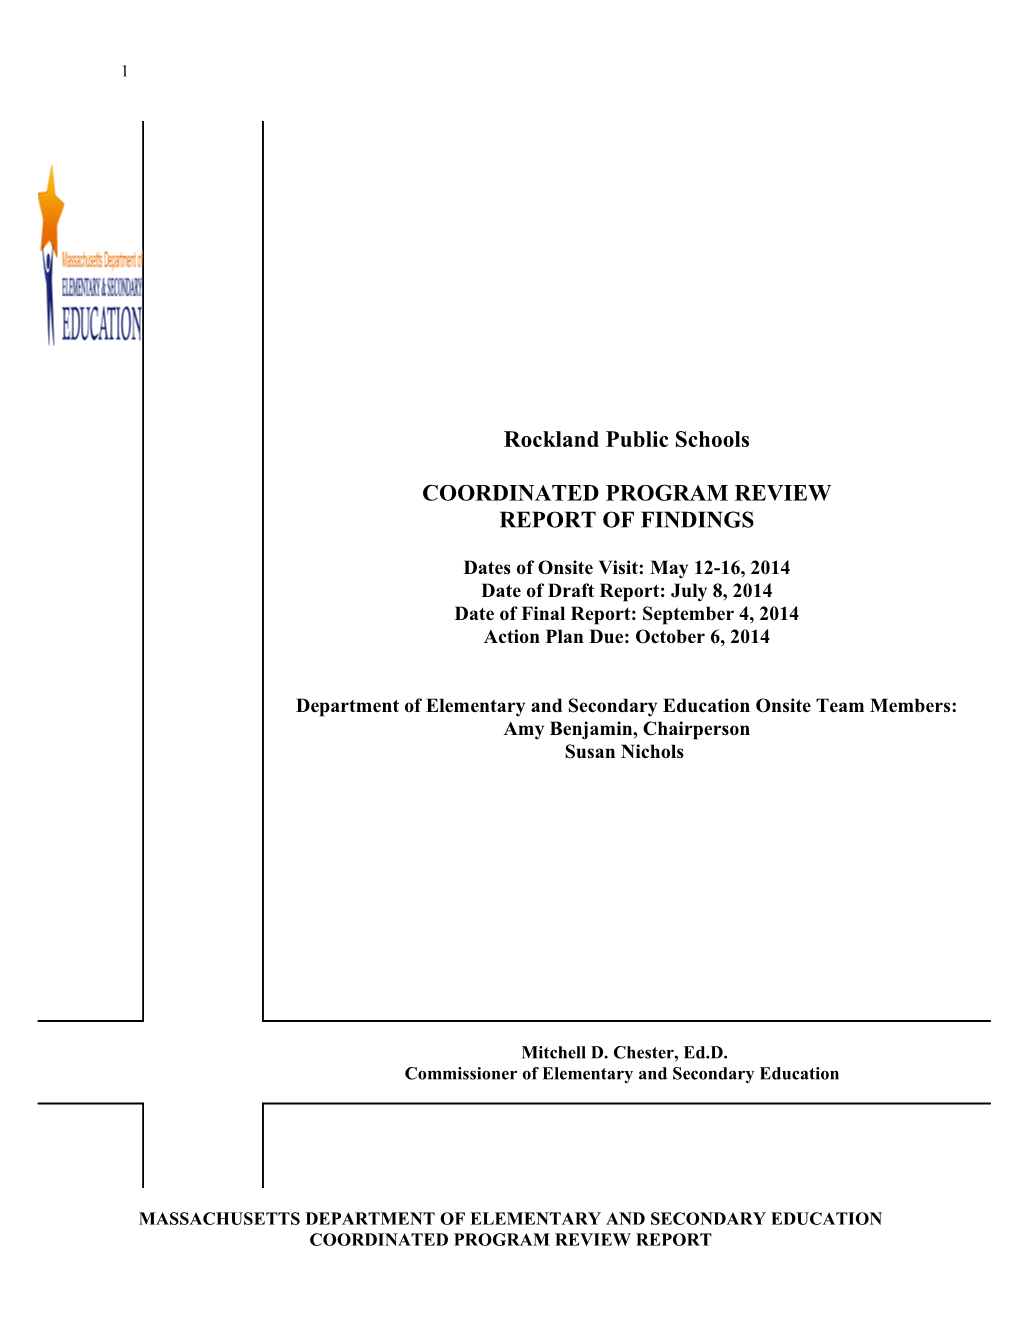 Rockland Public Schools CPR Final Report 2014